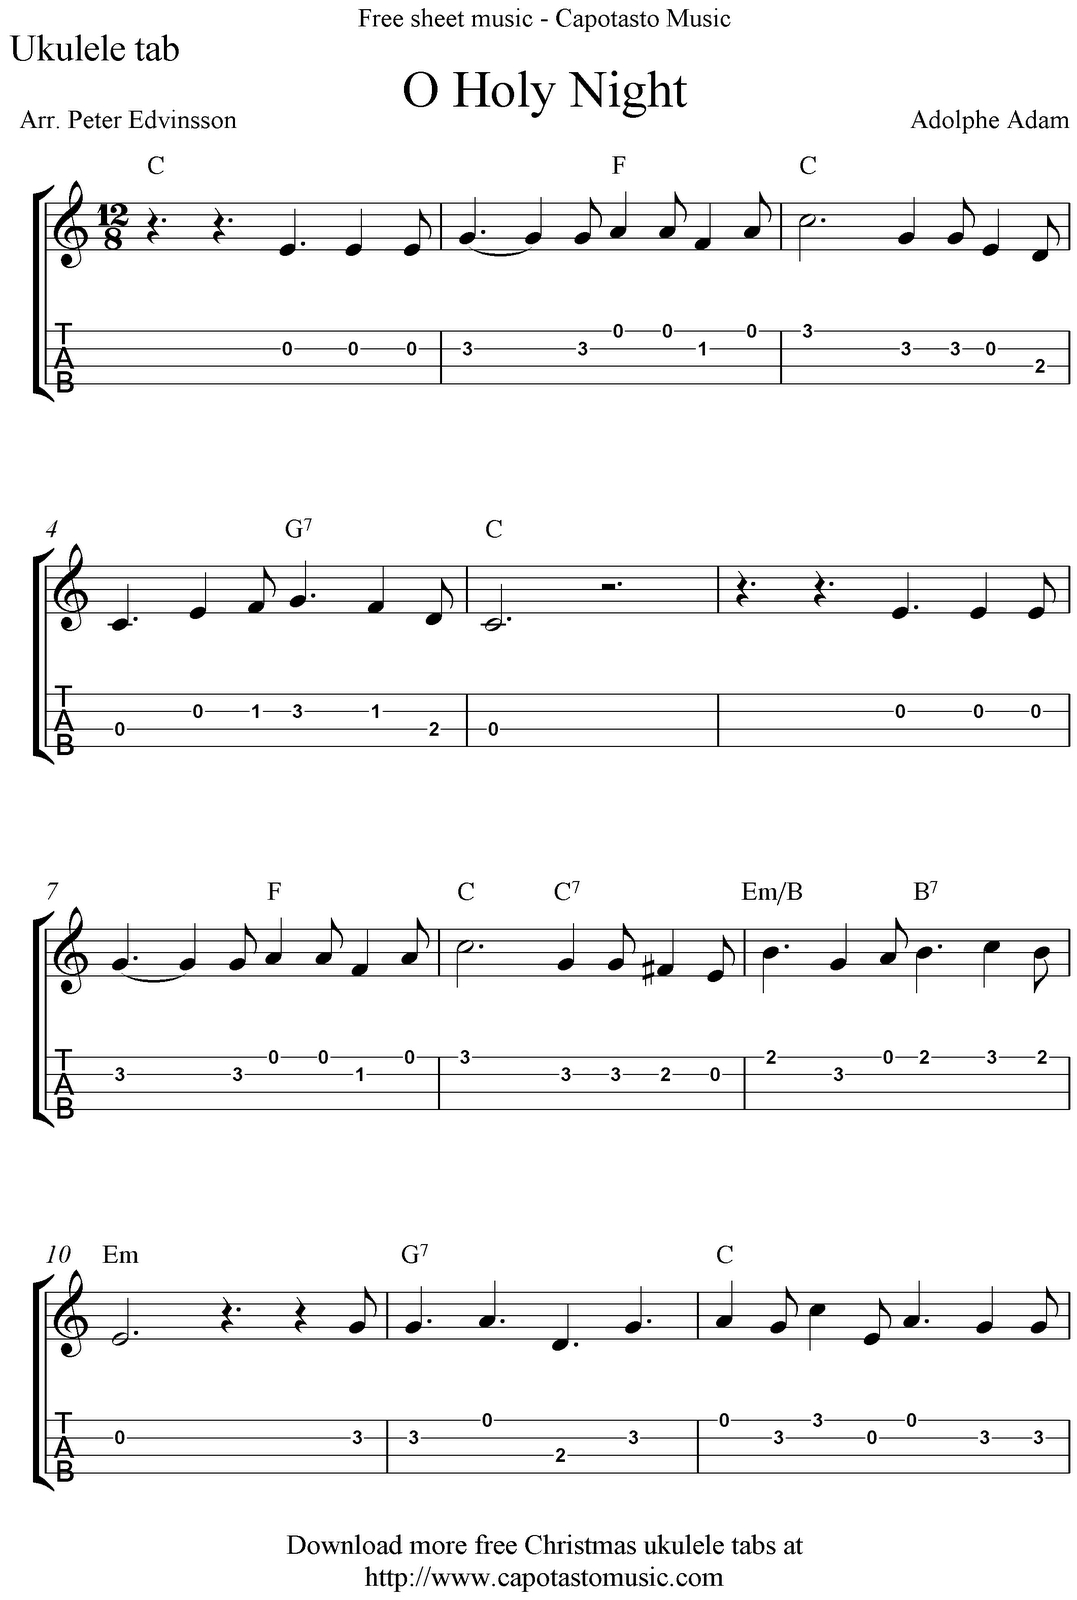 ✓&amp;quot;o Holy Night&amp;quot; Ukulele Sheet Music - Free Printable | Ukulele - Free Printable Ukulele Songs